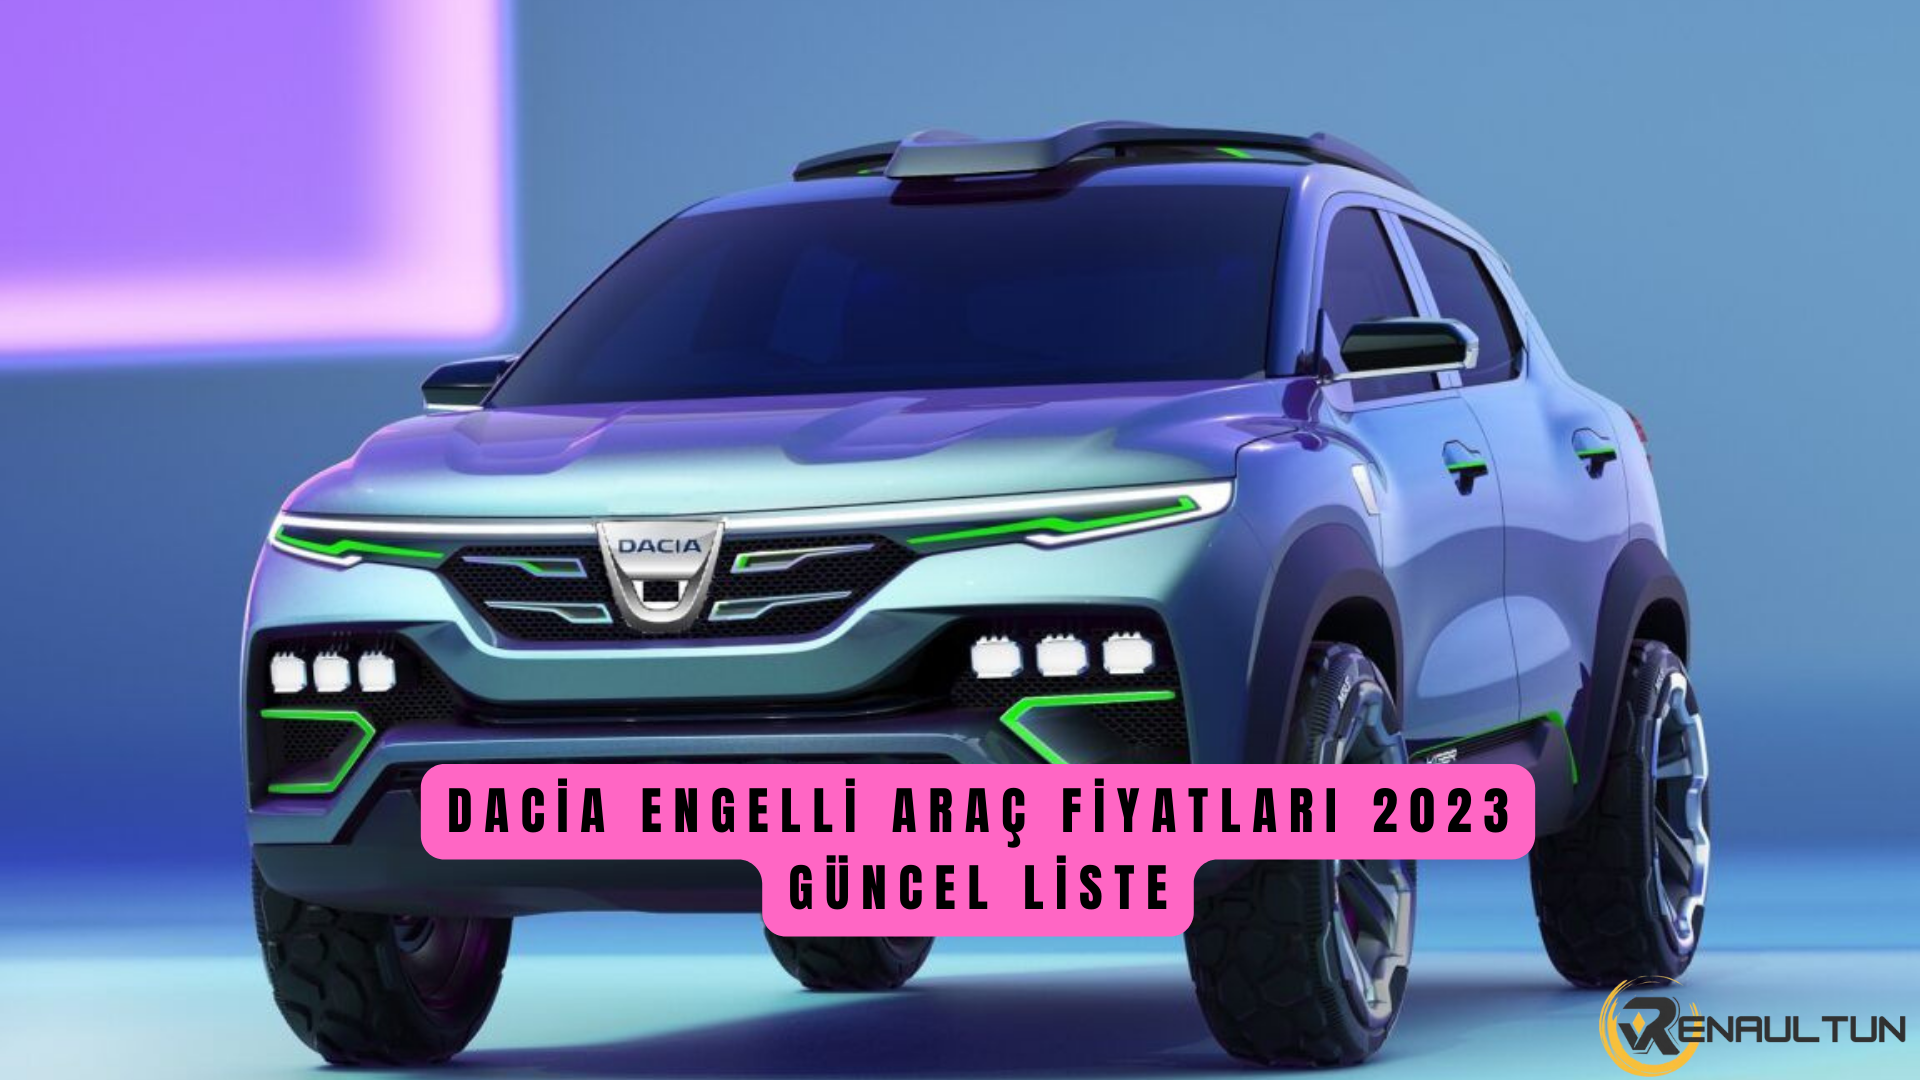 Dacia Engelli Araç Fiyat Listesi 2023